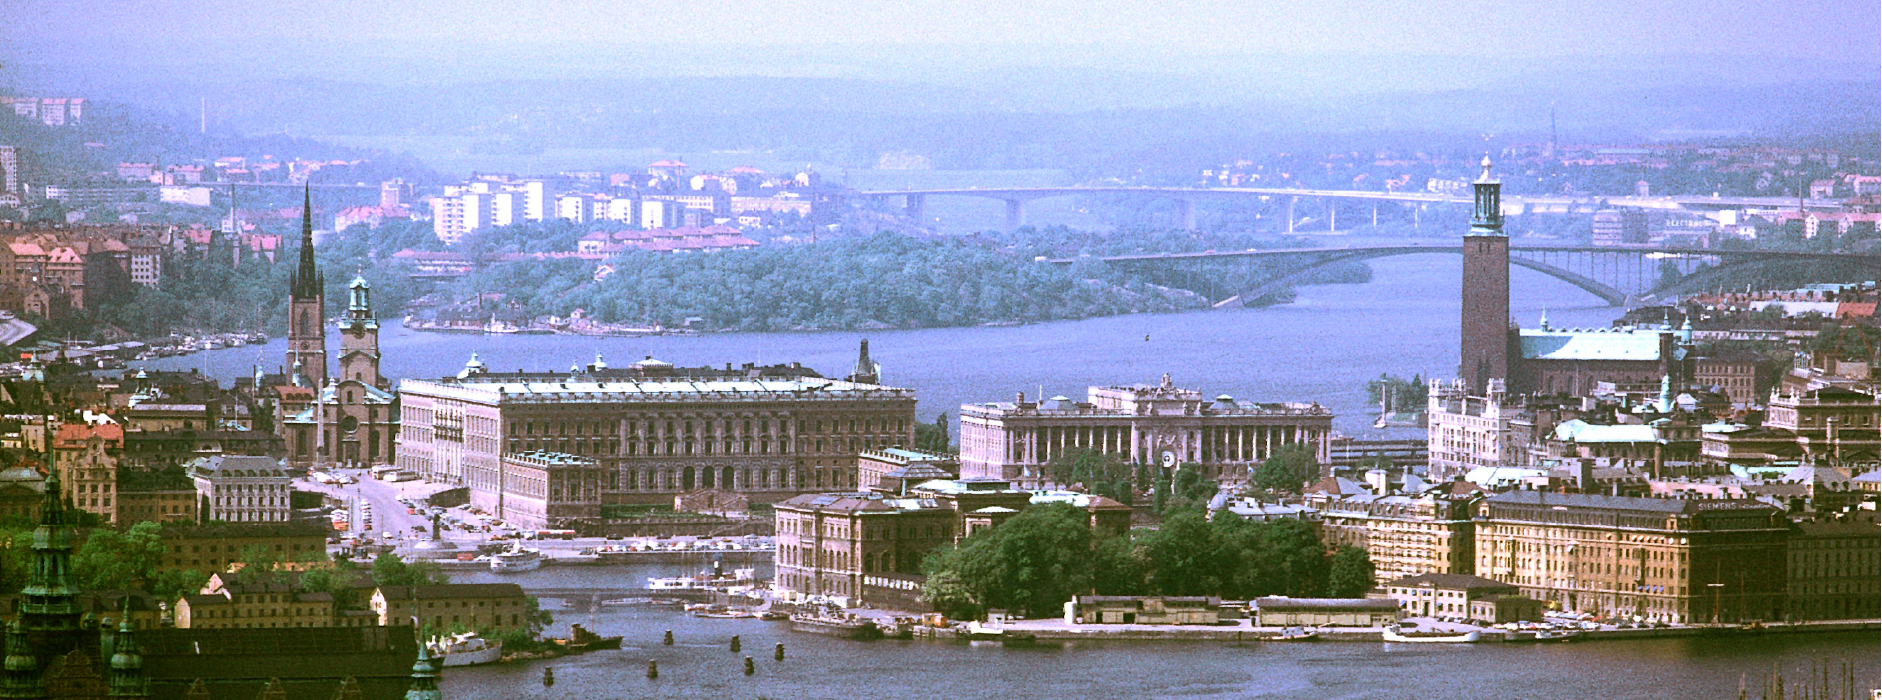 The Folkets Hus building (center) in Stockholm, Sweden.